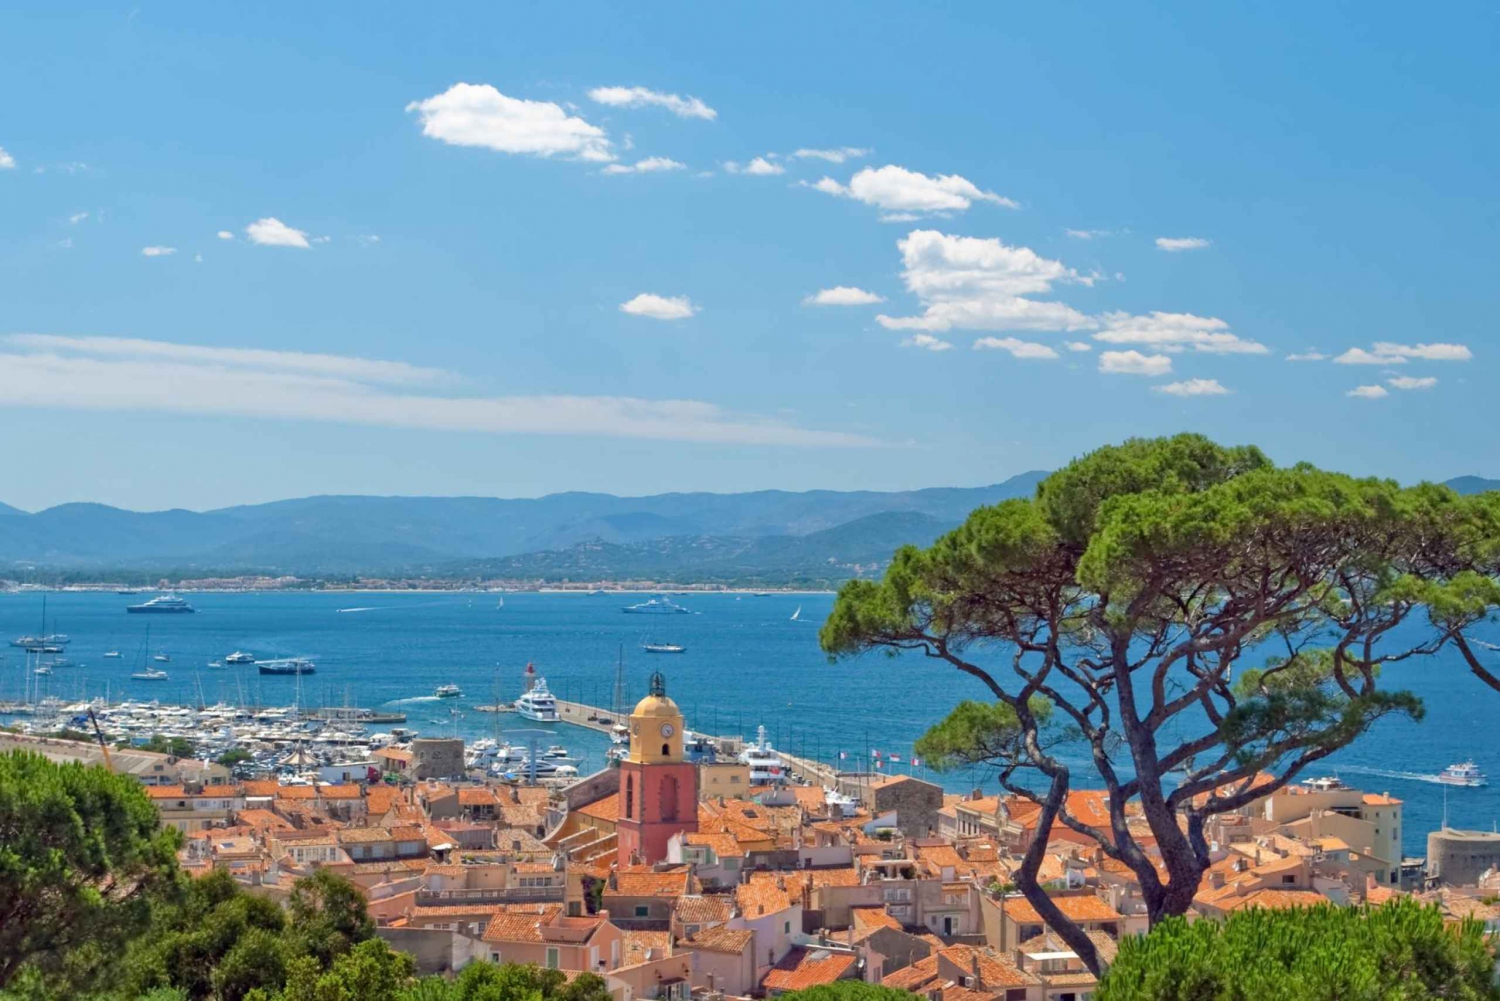 Fra Cannes: Tur-retur med båt til Saint Tropez